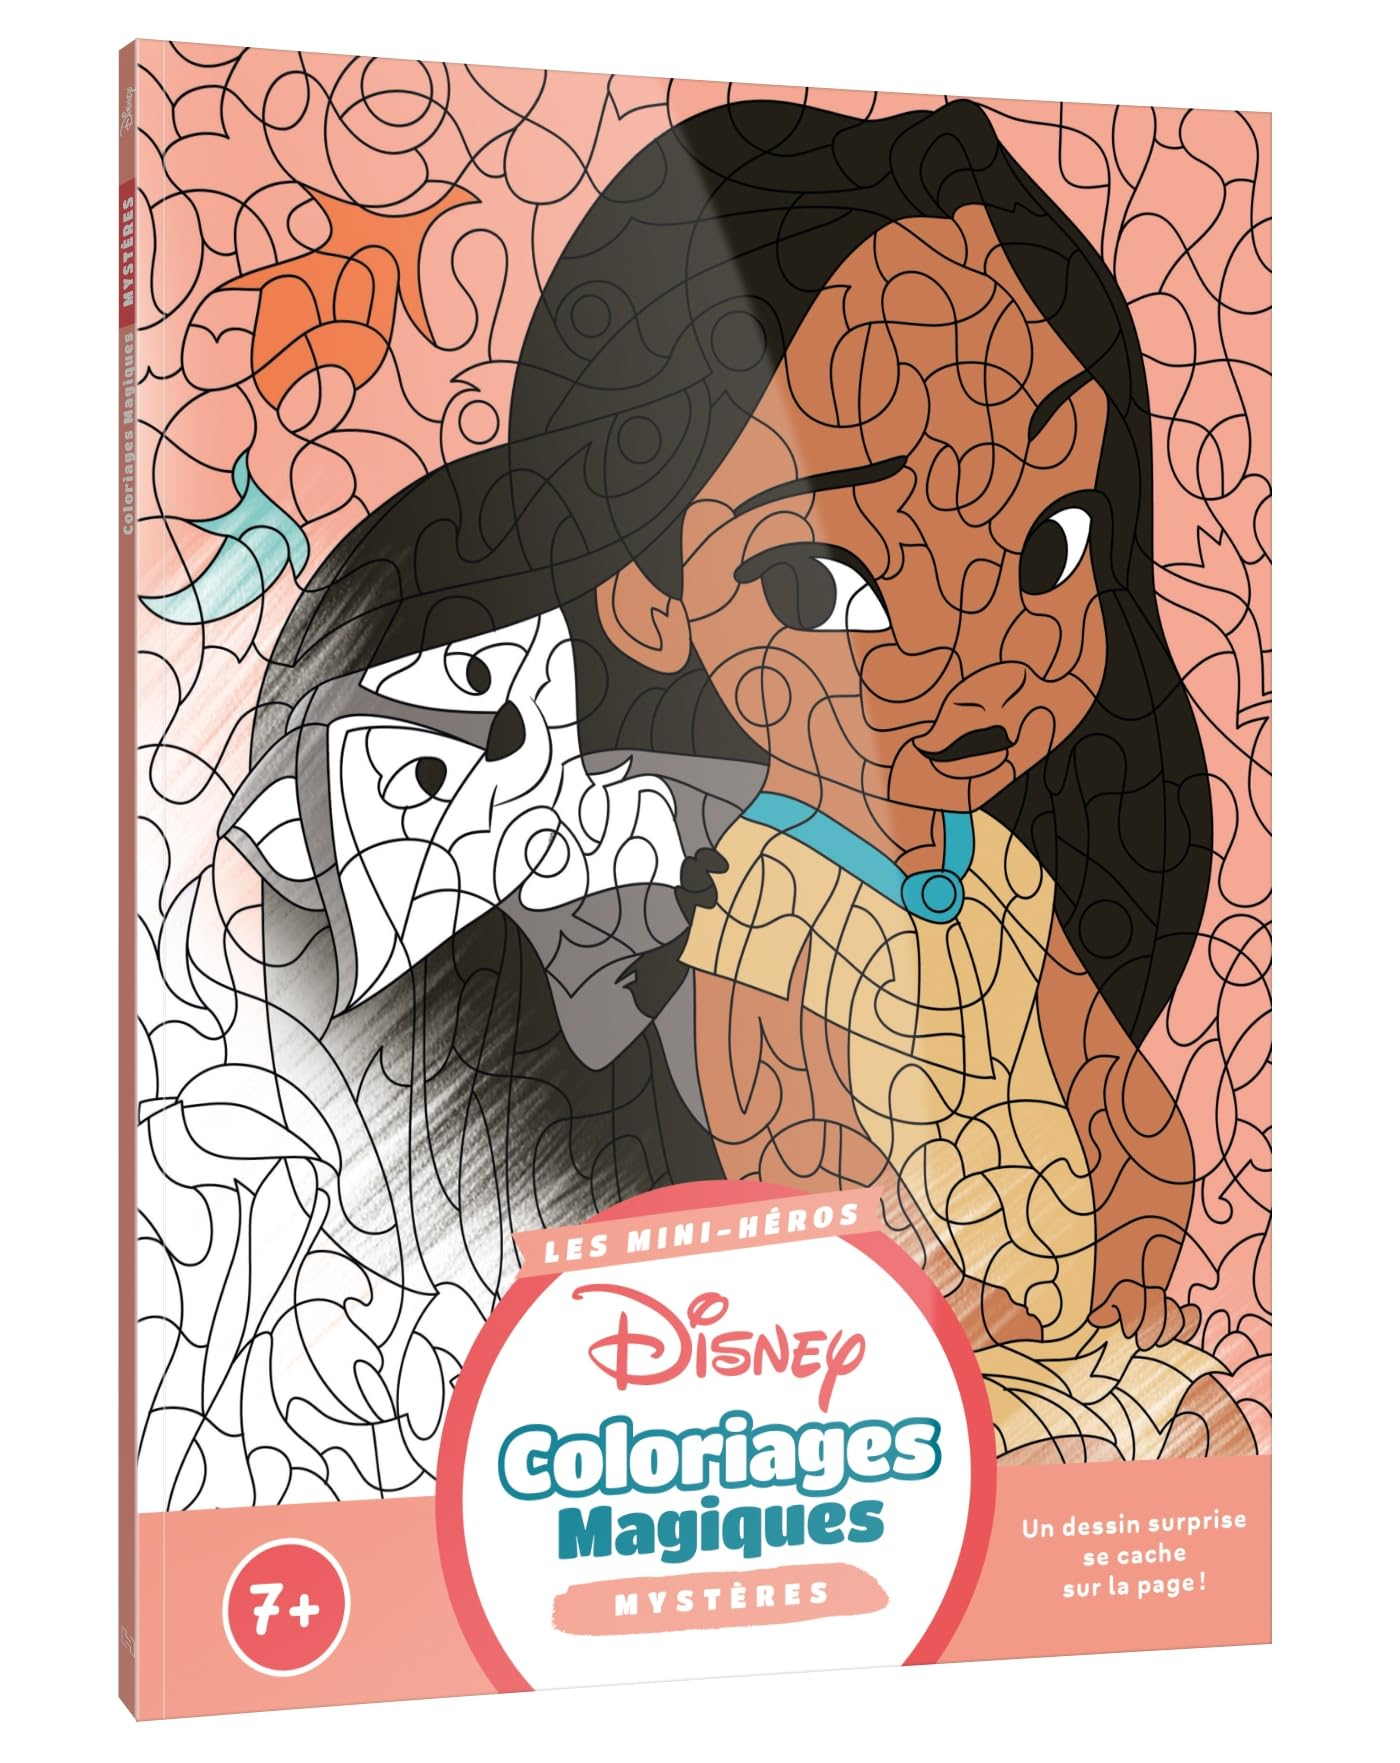 DISNEY : Coloriages Magiques : Mystères (7+) - Bébés héros